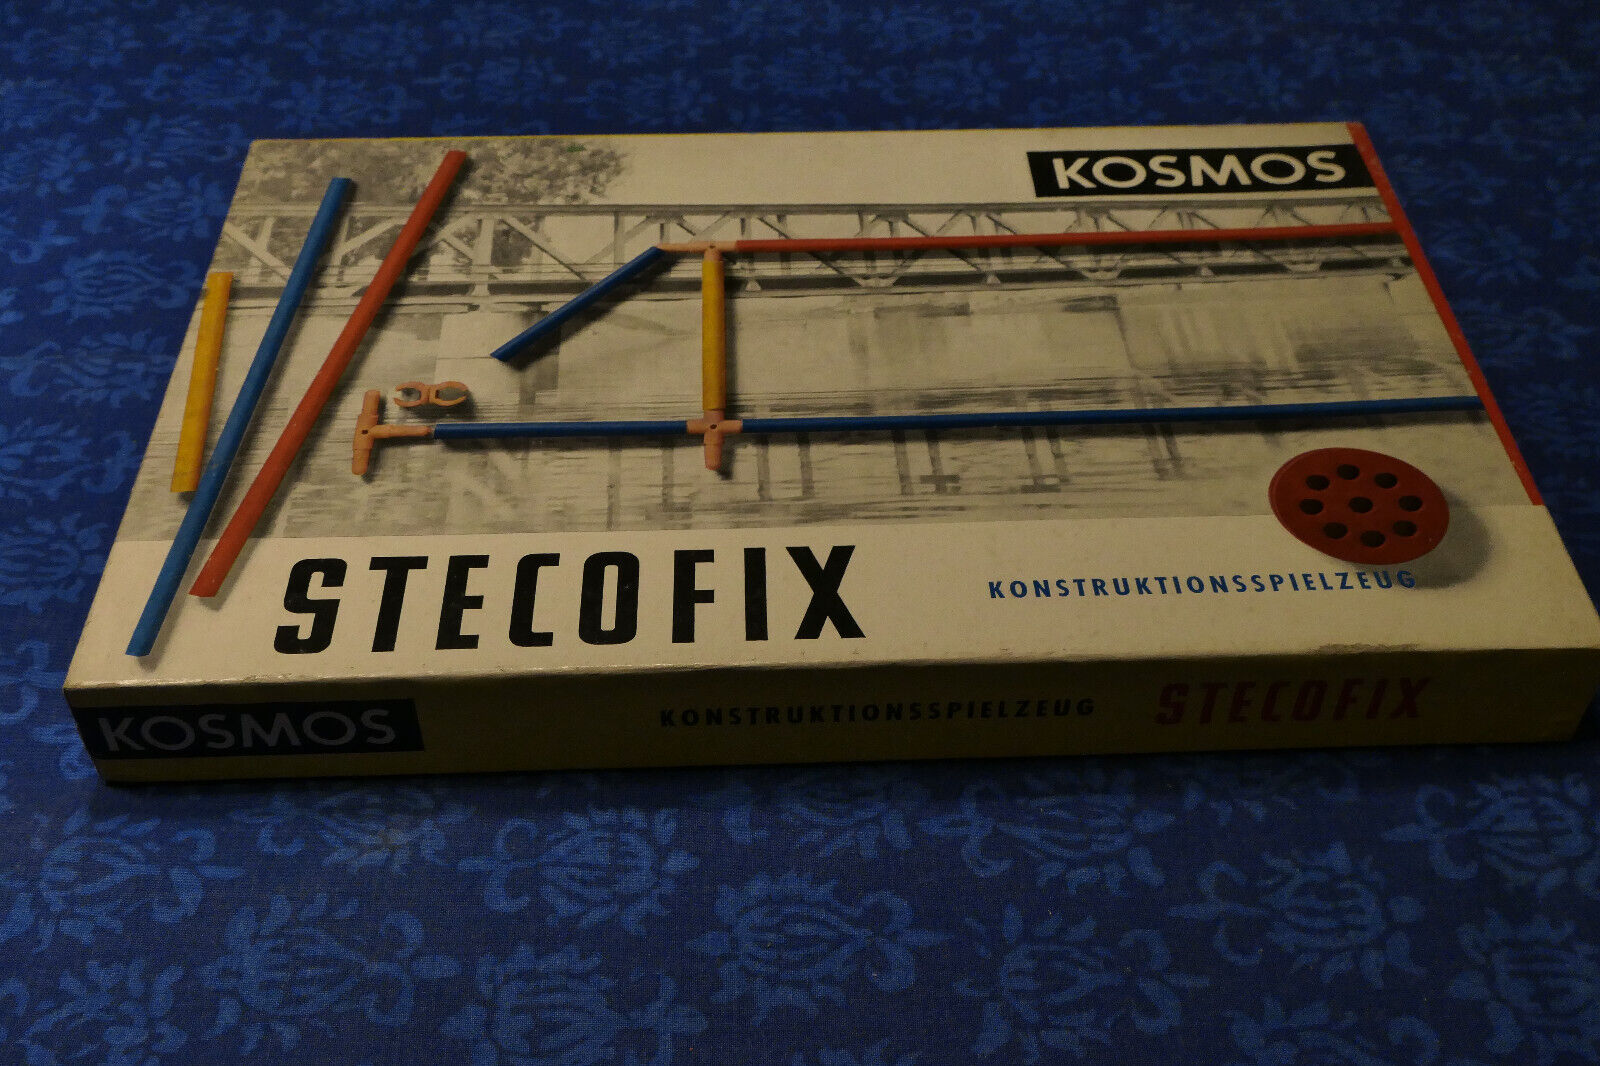 Stecofix 6.jpg